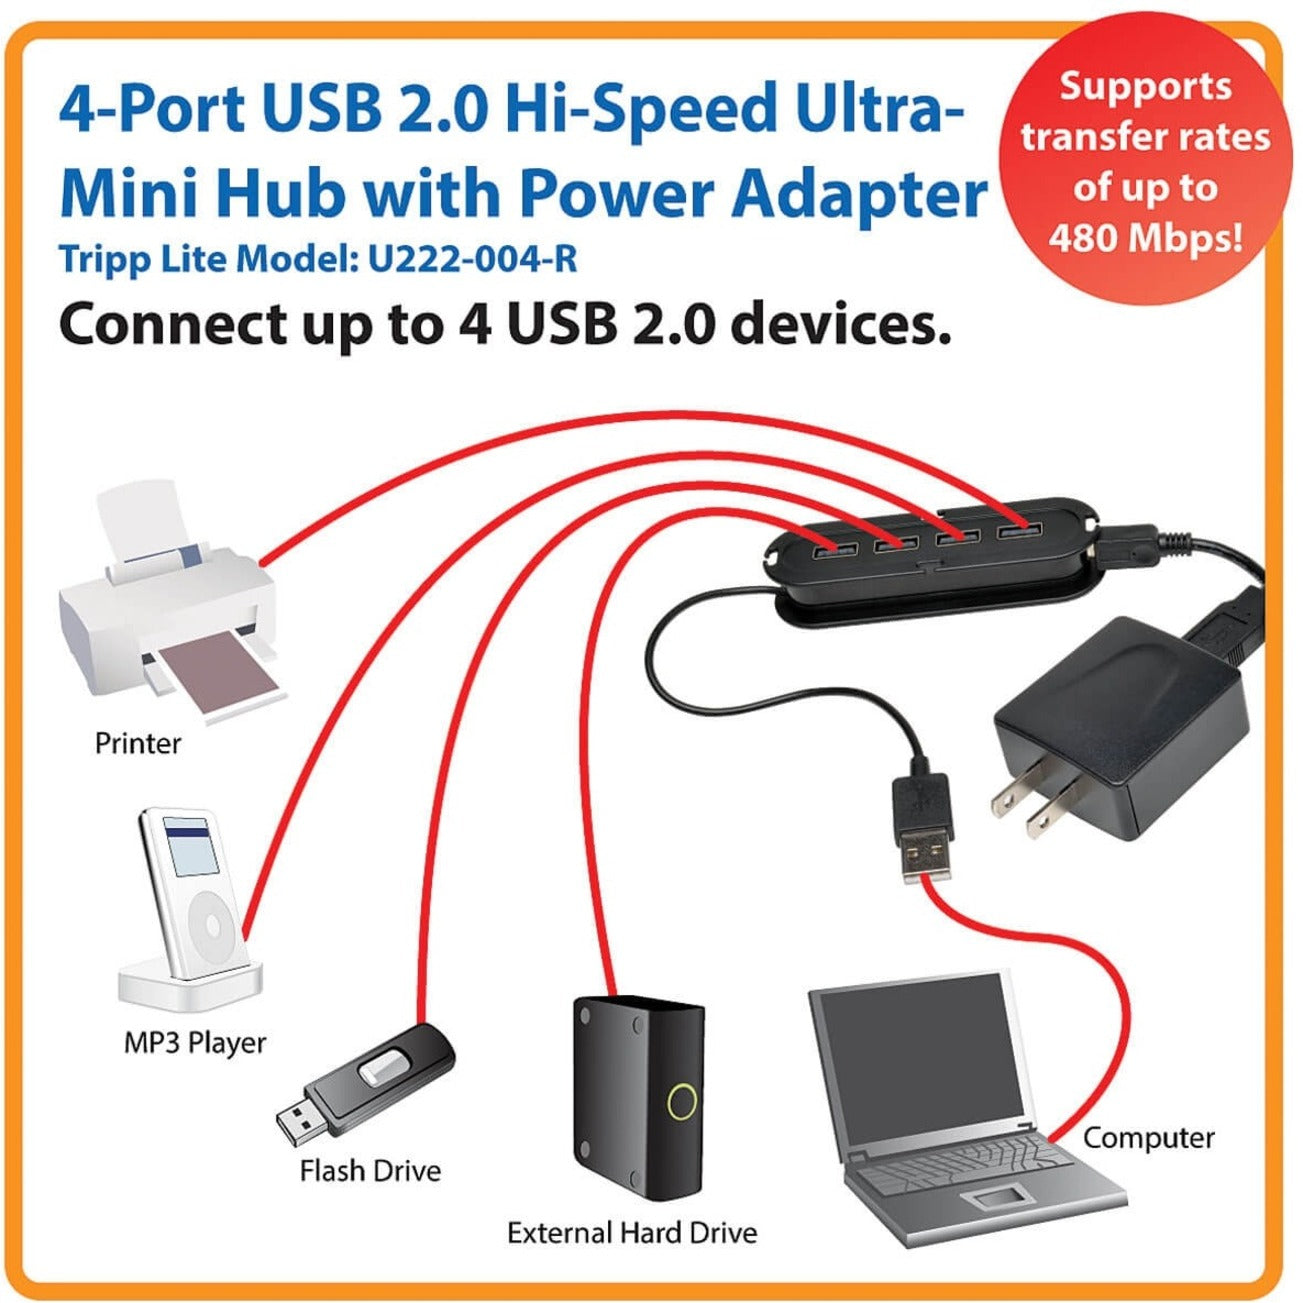 特点：三屏利特 U222-004-R 4-端口 USB 2.0 高速超迷你集线器，紧凑设计，黑色 品牌：三屏利特